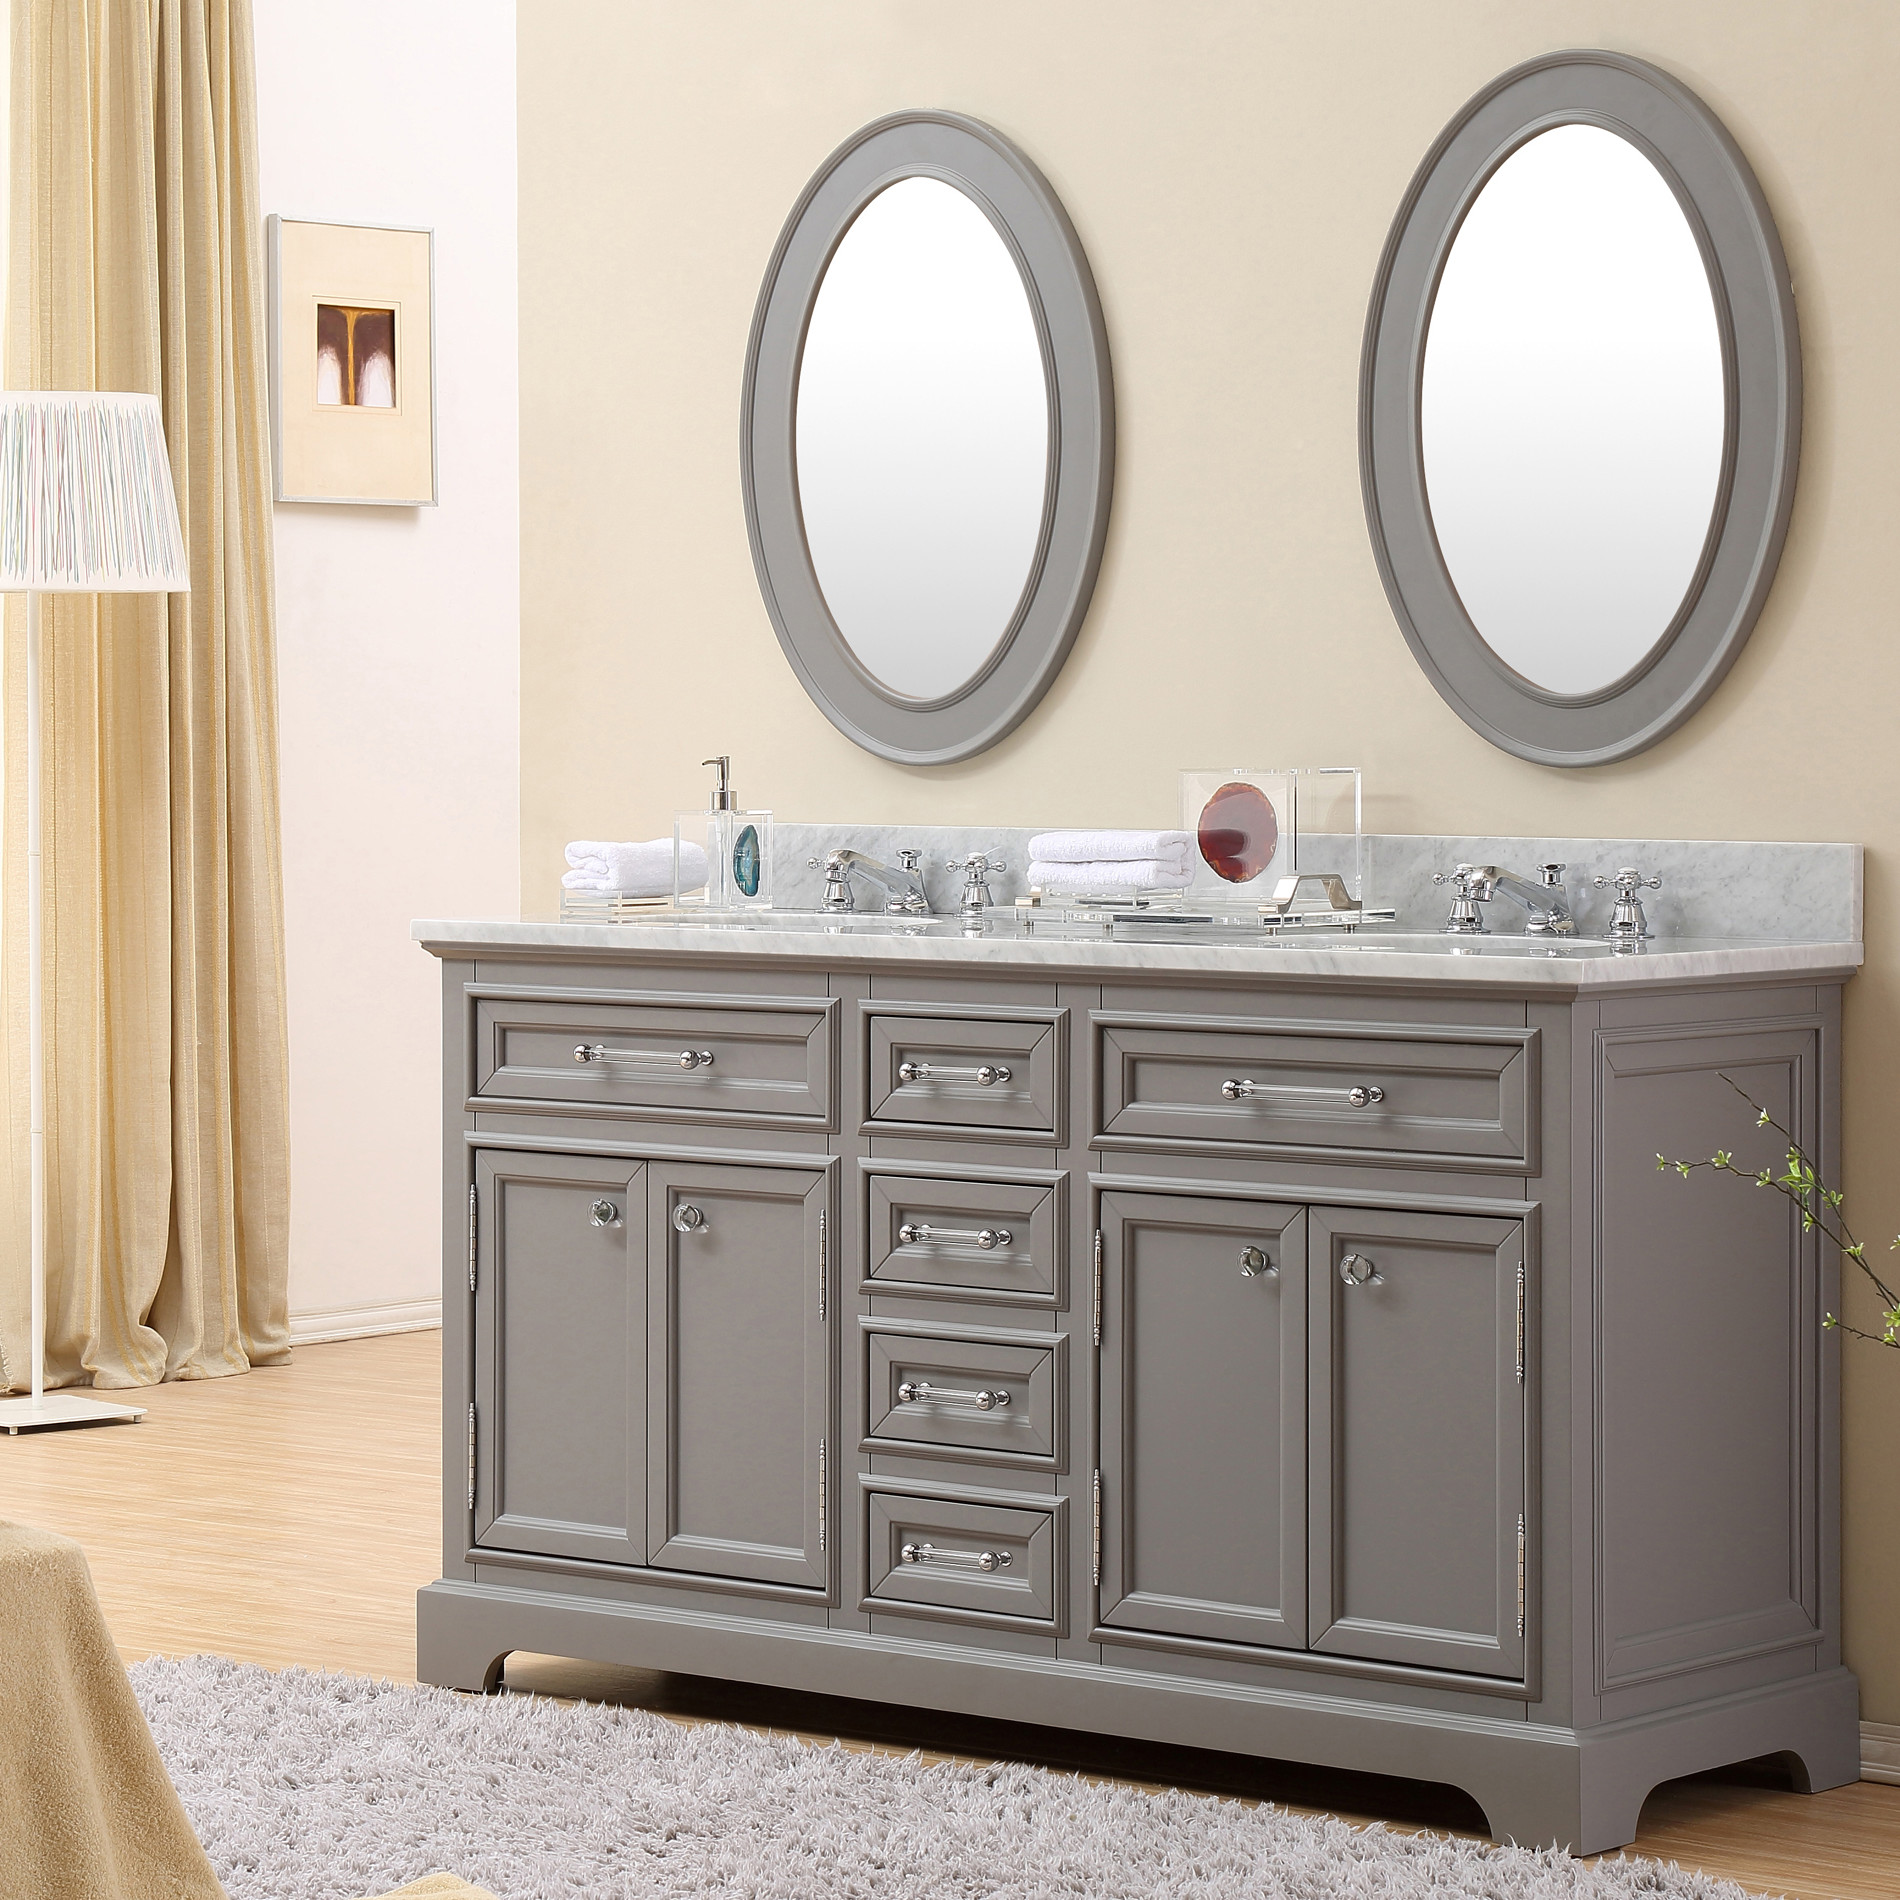 Traditional Bathroom Vanities With Double Sink Design